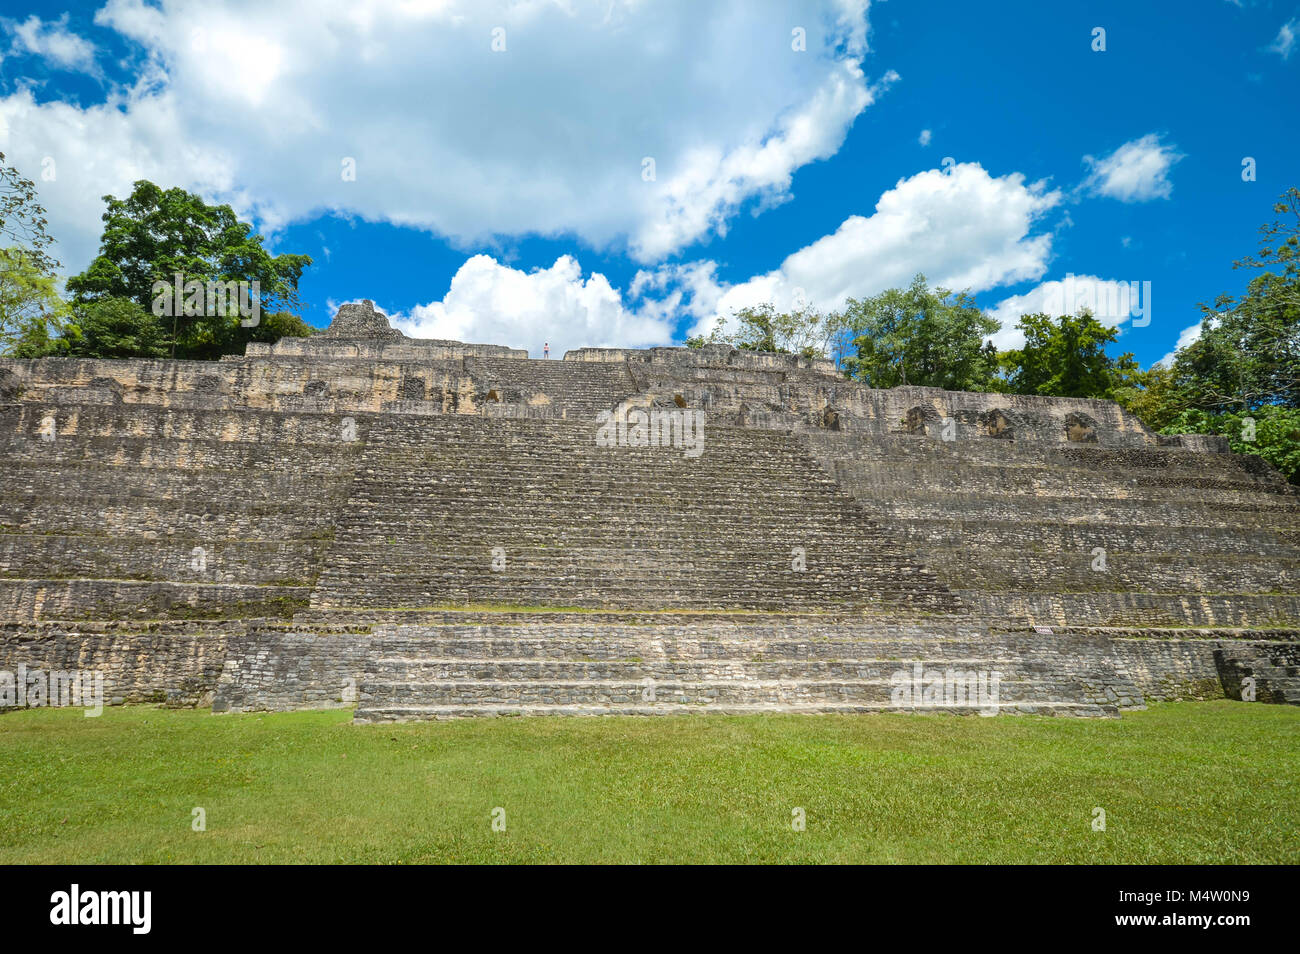 Nahaufnahme der Caana Pyramide die Caracol archäologische Stätte der Maya Zivilisation in Belize. Mittelamerika Stockfoto